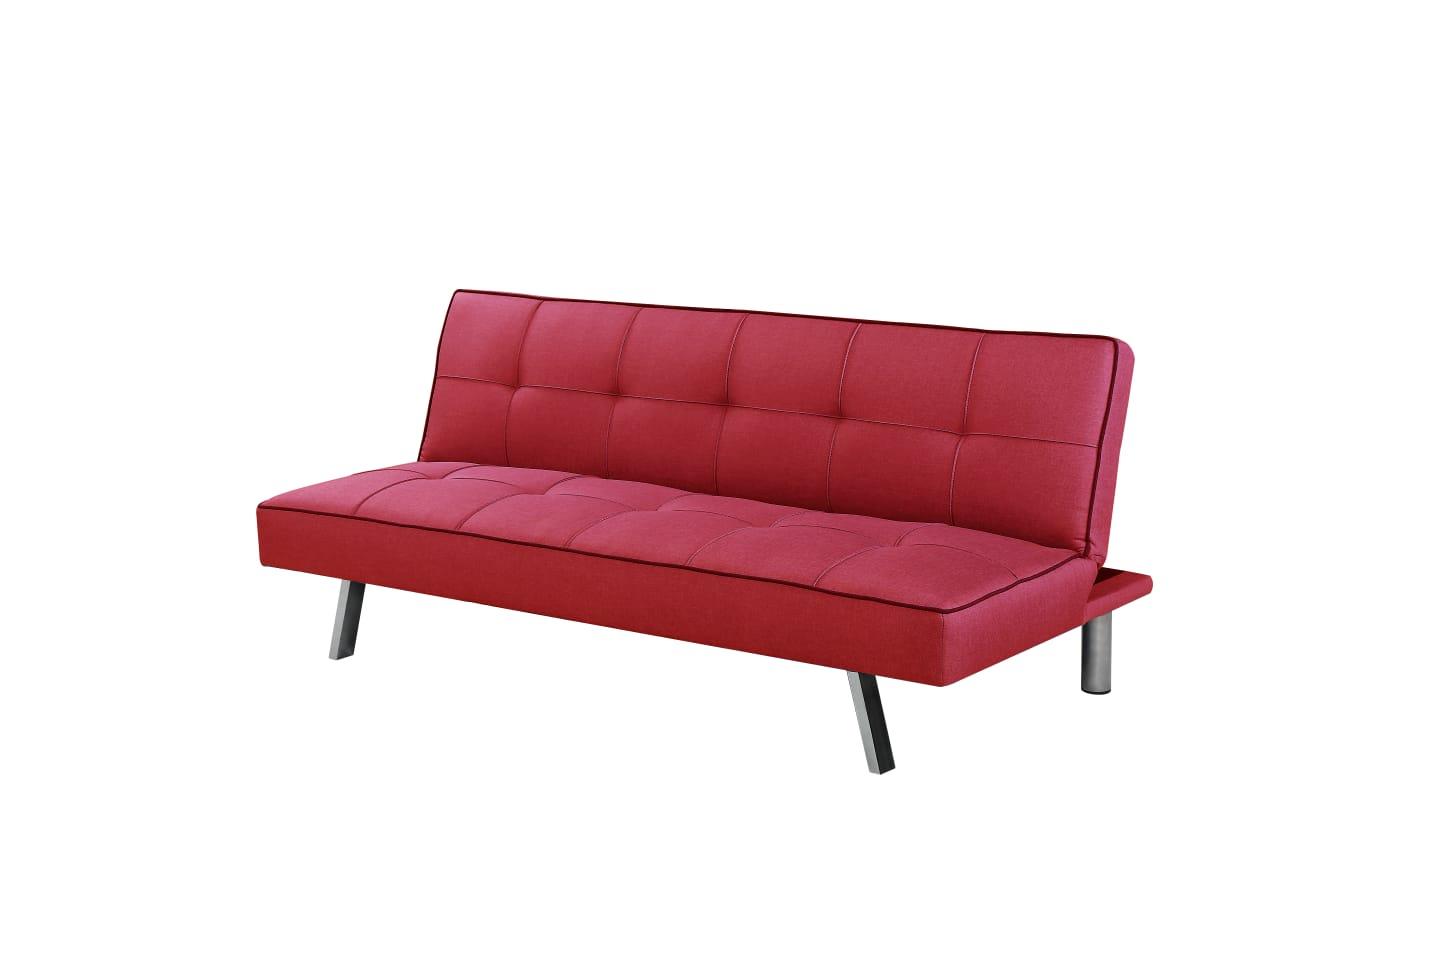 ספה תלת מושבית נפתחת למיטה תלת מושבית דגם מיאמי צבע אדום **חוזר למלאי 12/1**